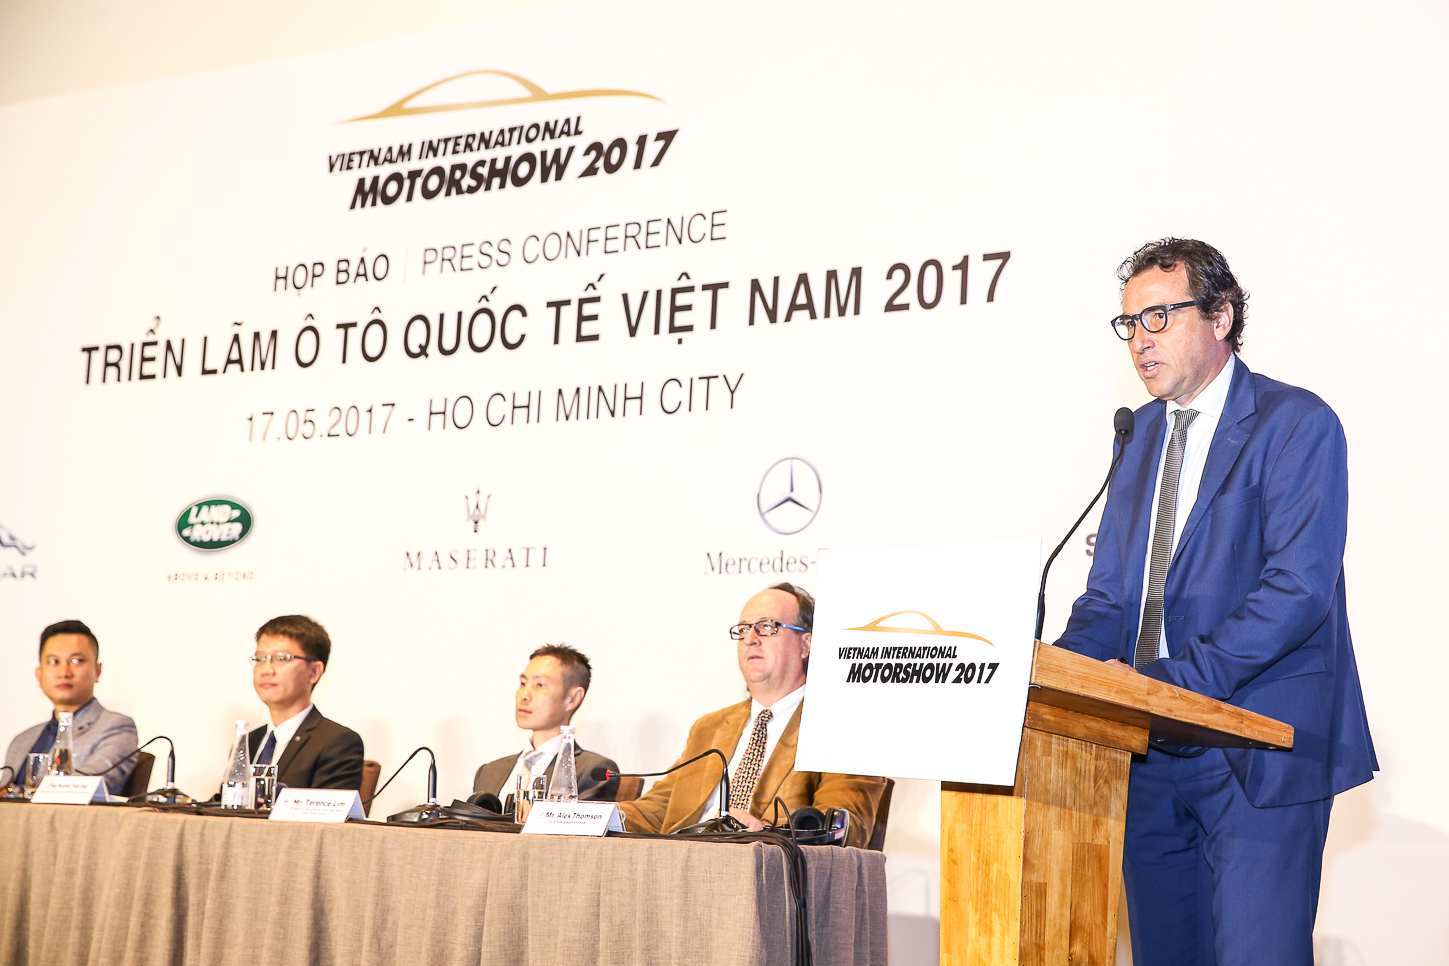 Triển lãm ô tô quốc tế lớn nhất Việt Nam – Vietnam International Motorshow chính thức quay trở lại